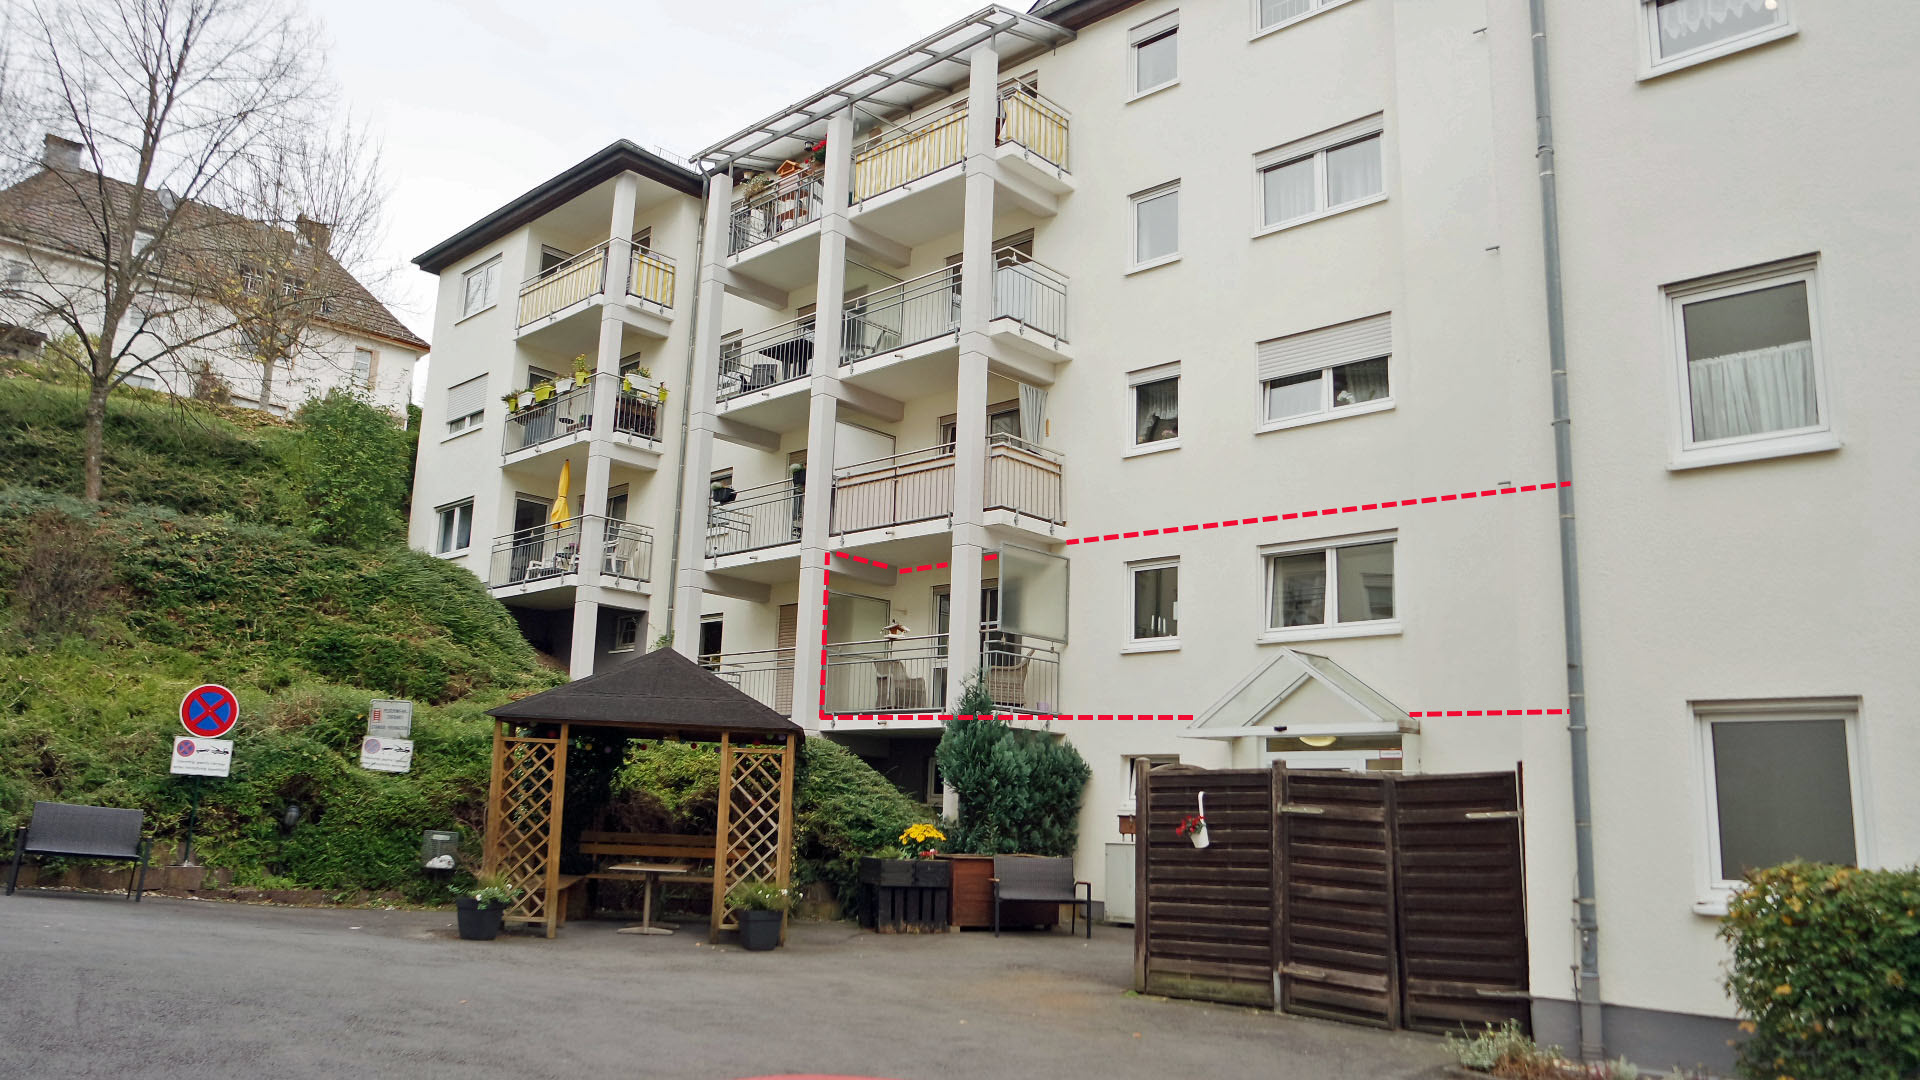 Gummersbach: Appartement in einer Seniorenresidenz, 48 m² Appartement mit Balkon